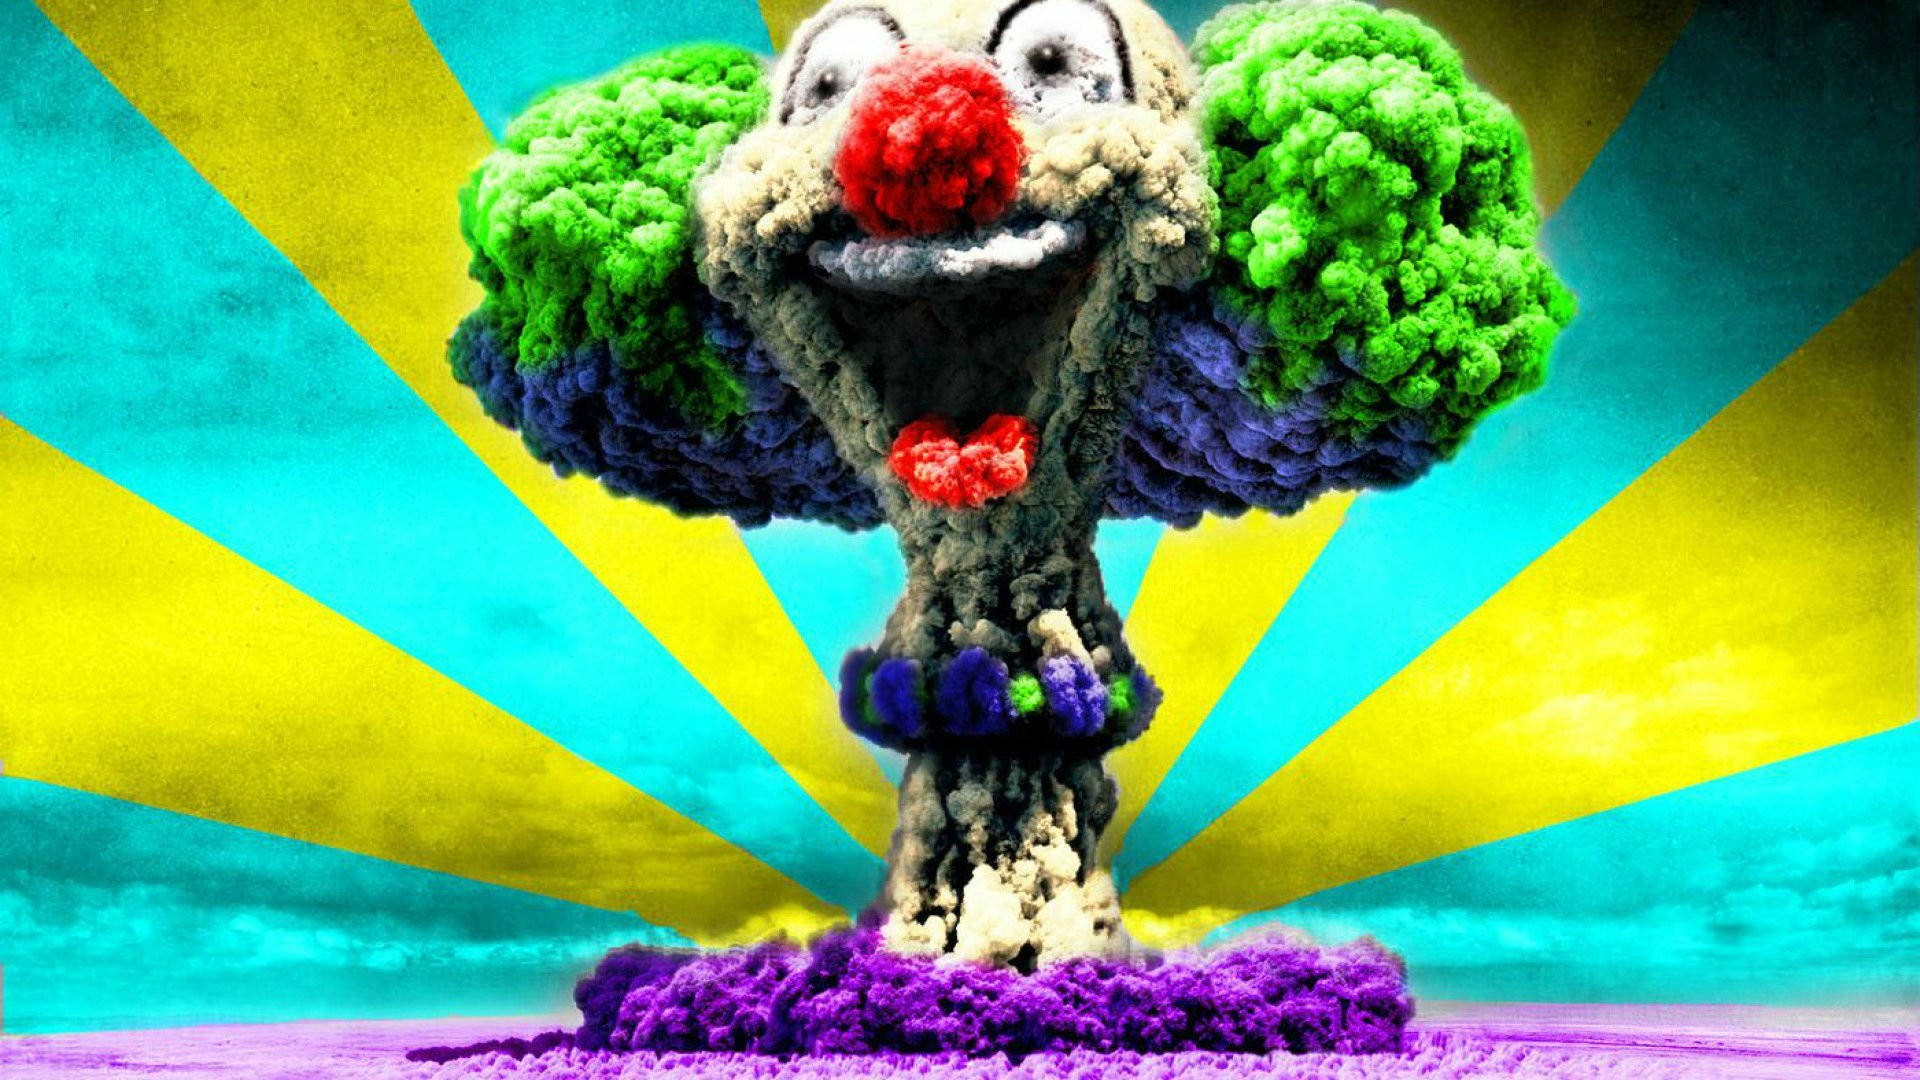 Icp Clown Nuclear Cloud Background